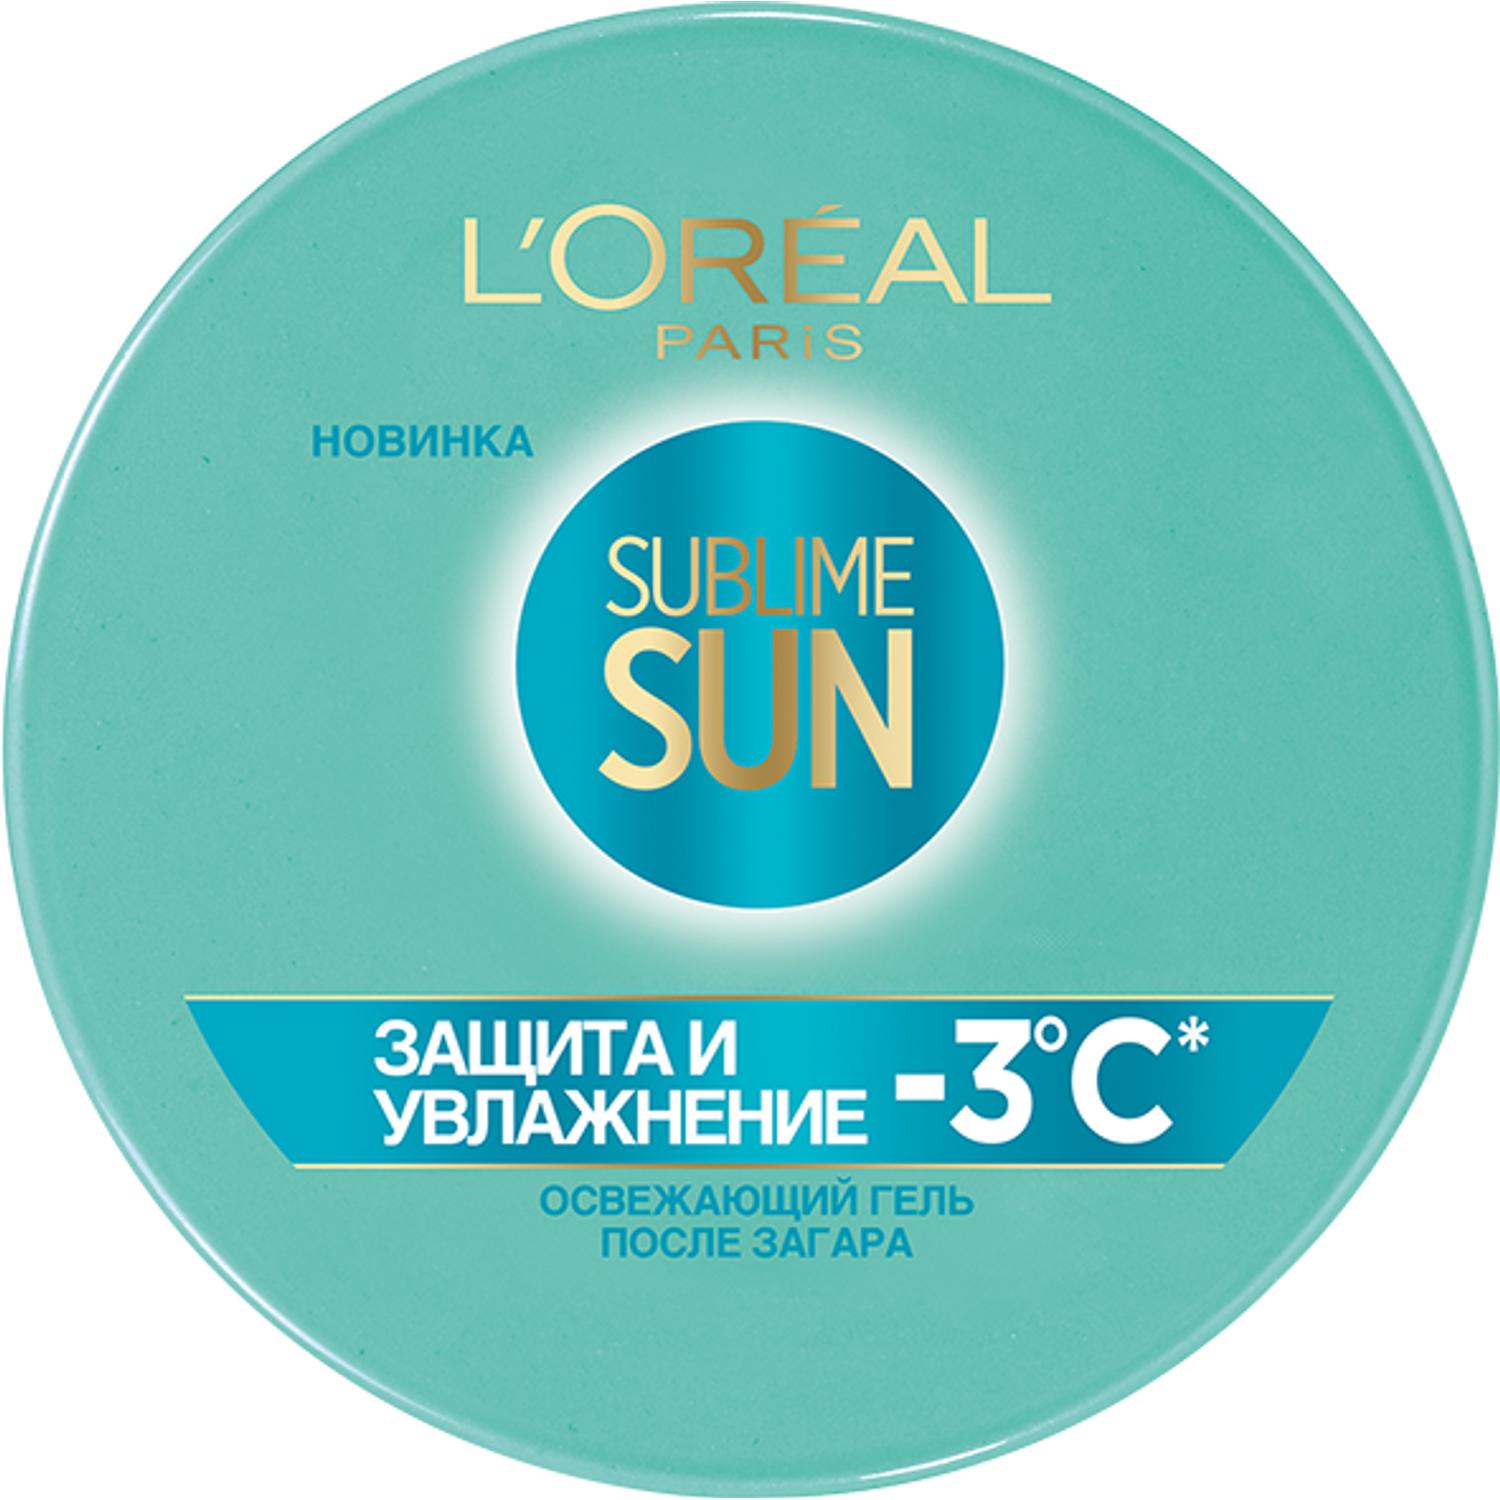 Освежающий гель после загара для лица и тела L'Oreal Paris Sublime Sun Защита и Увлажнение 150 мл, размер 9x9x4,5 см